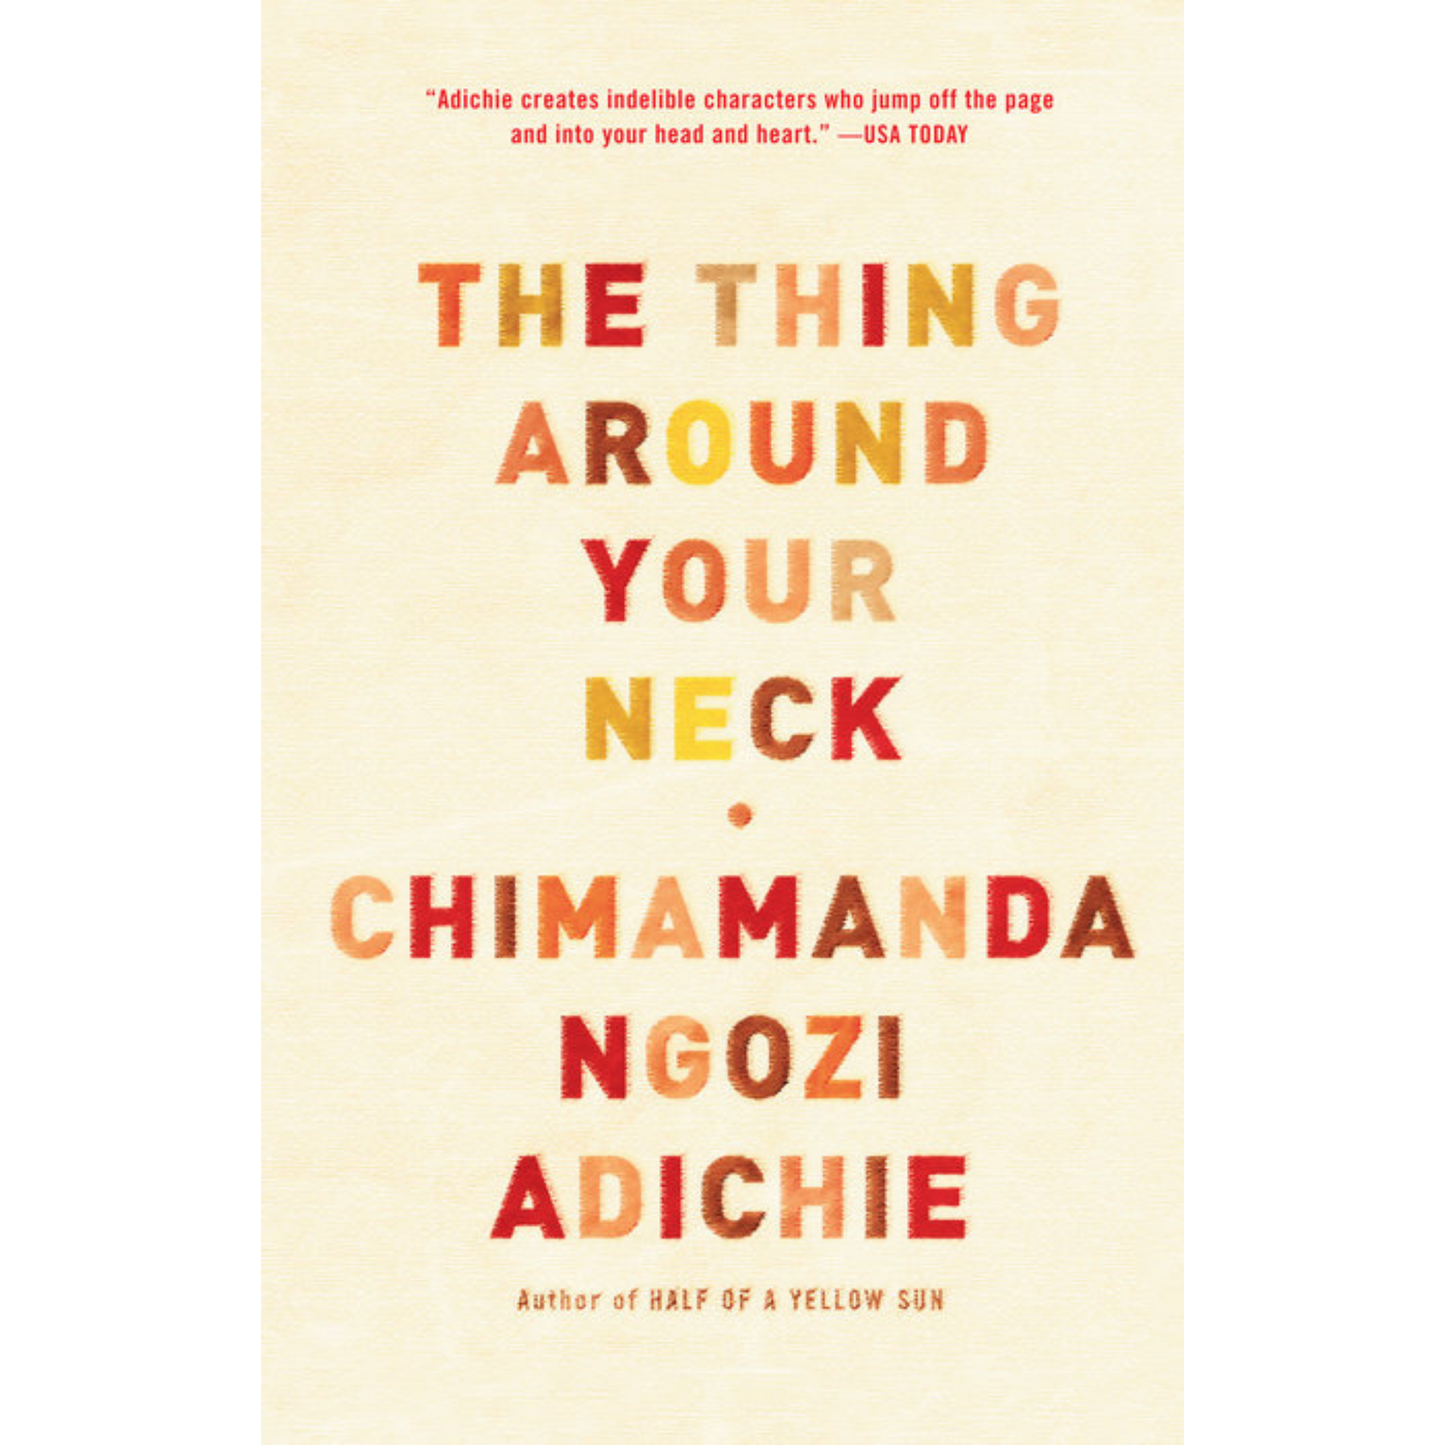 the thing around your neck chimamanda ngozi adichie